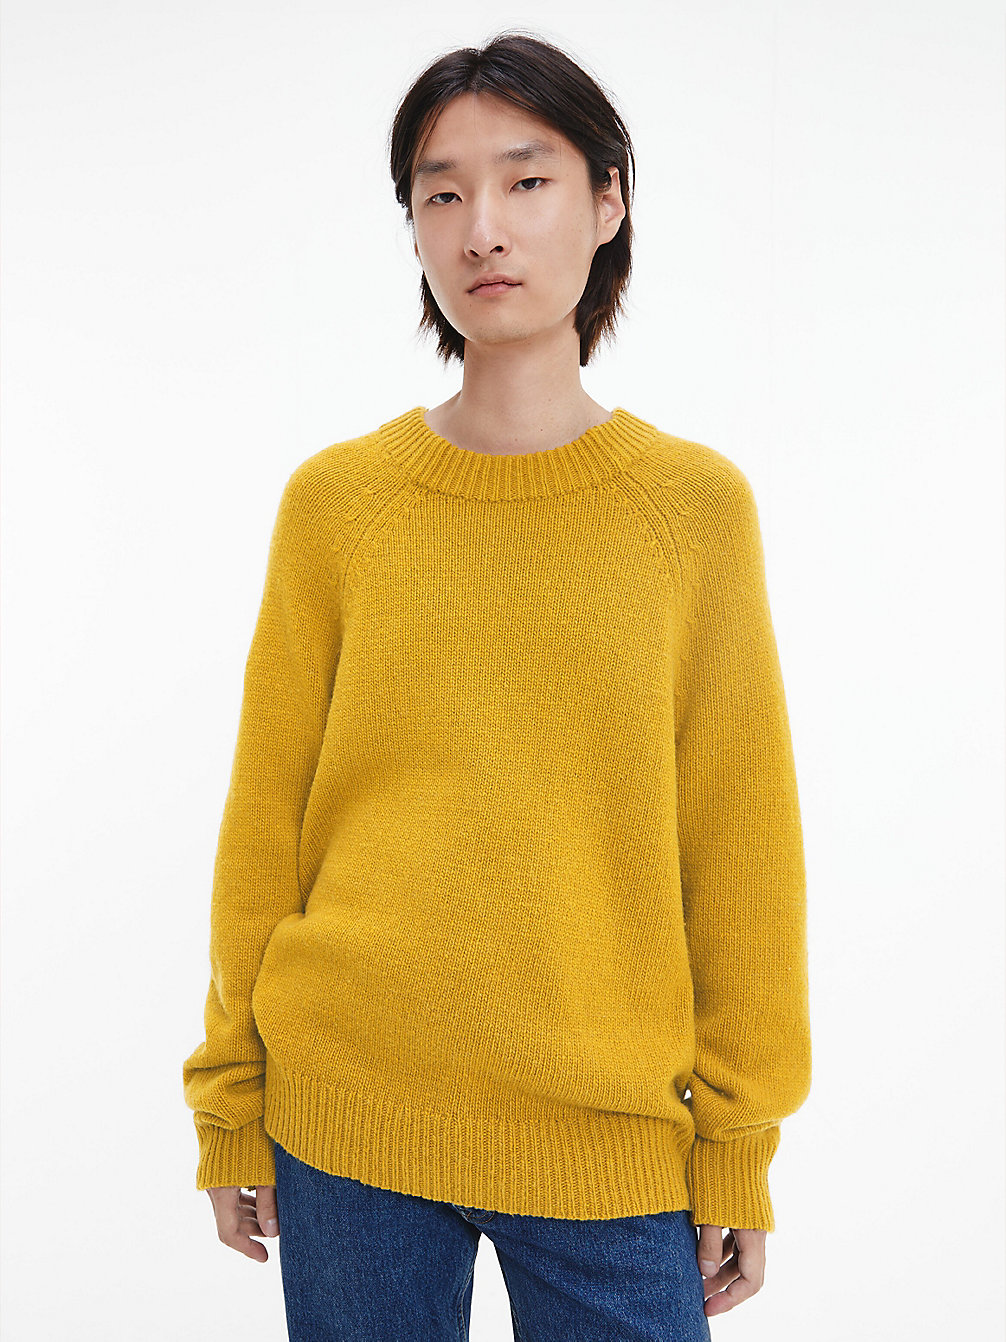 HONEY Unisex Wool Blend Jumper - CK Standards undefined unisex Calvin Klein